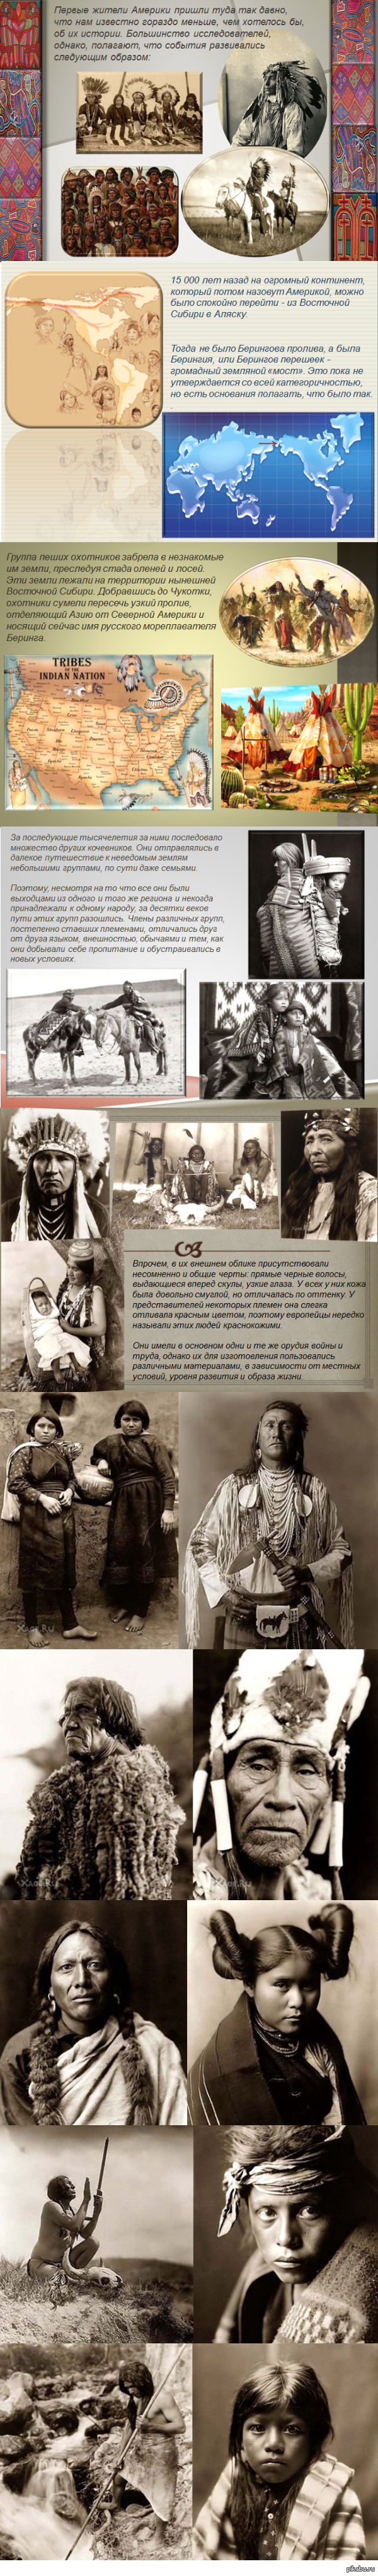 Откуда пришли американские индейцы? | Пикабу